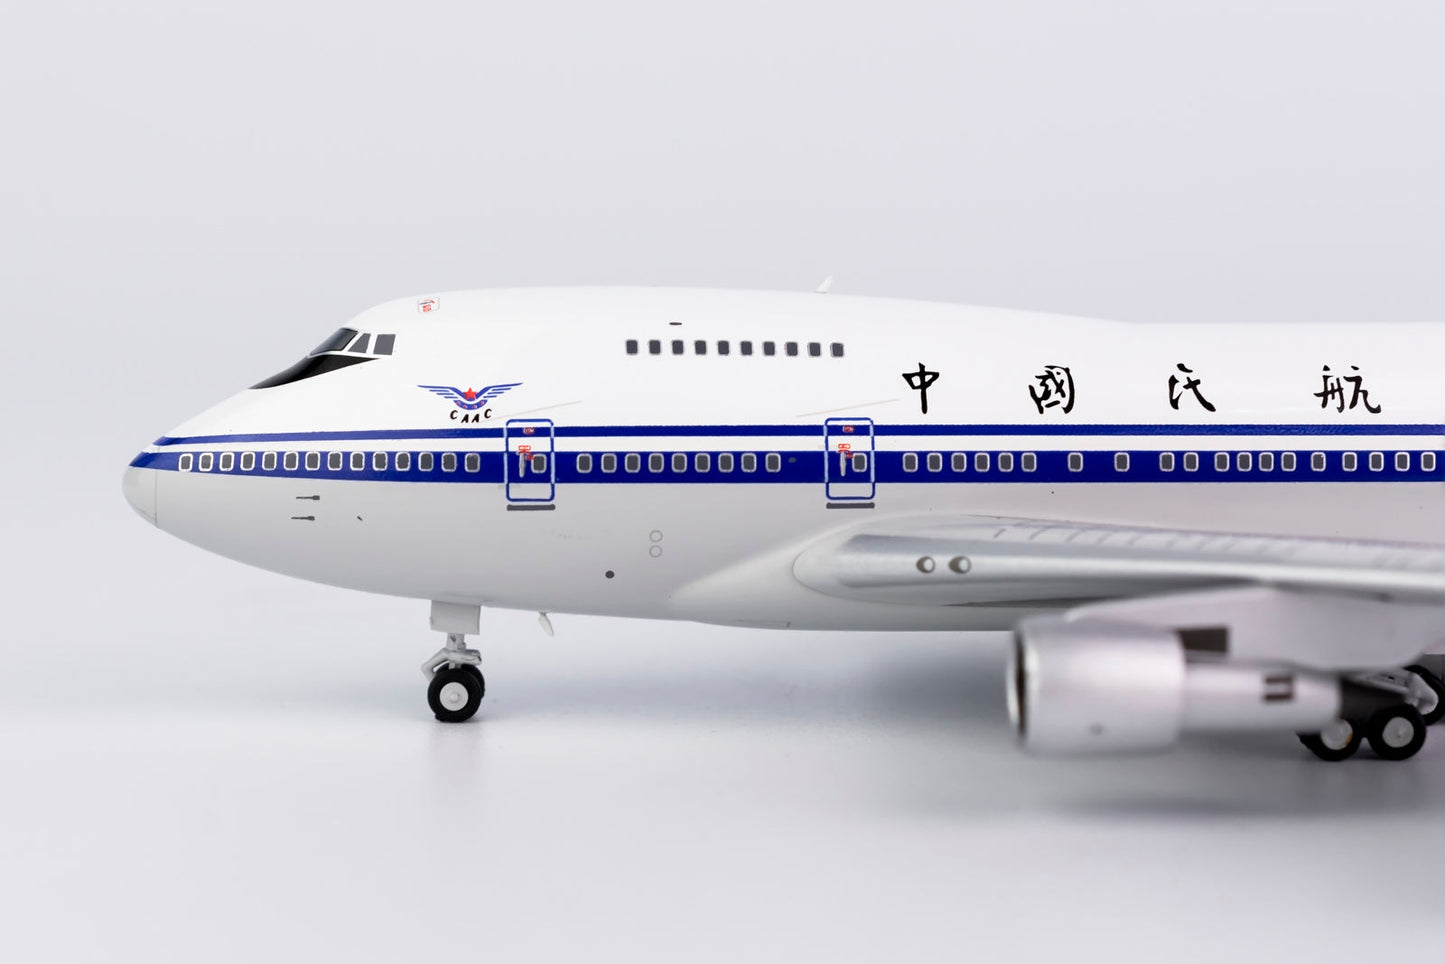 *1/400 CAAC B 747SP NG Models 07019